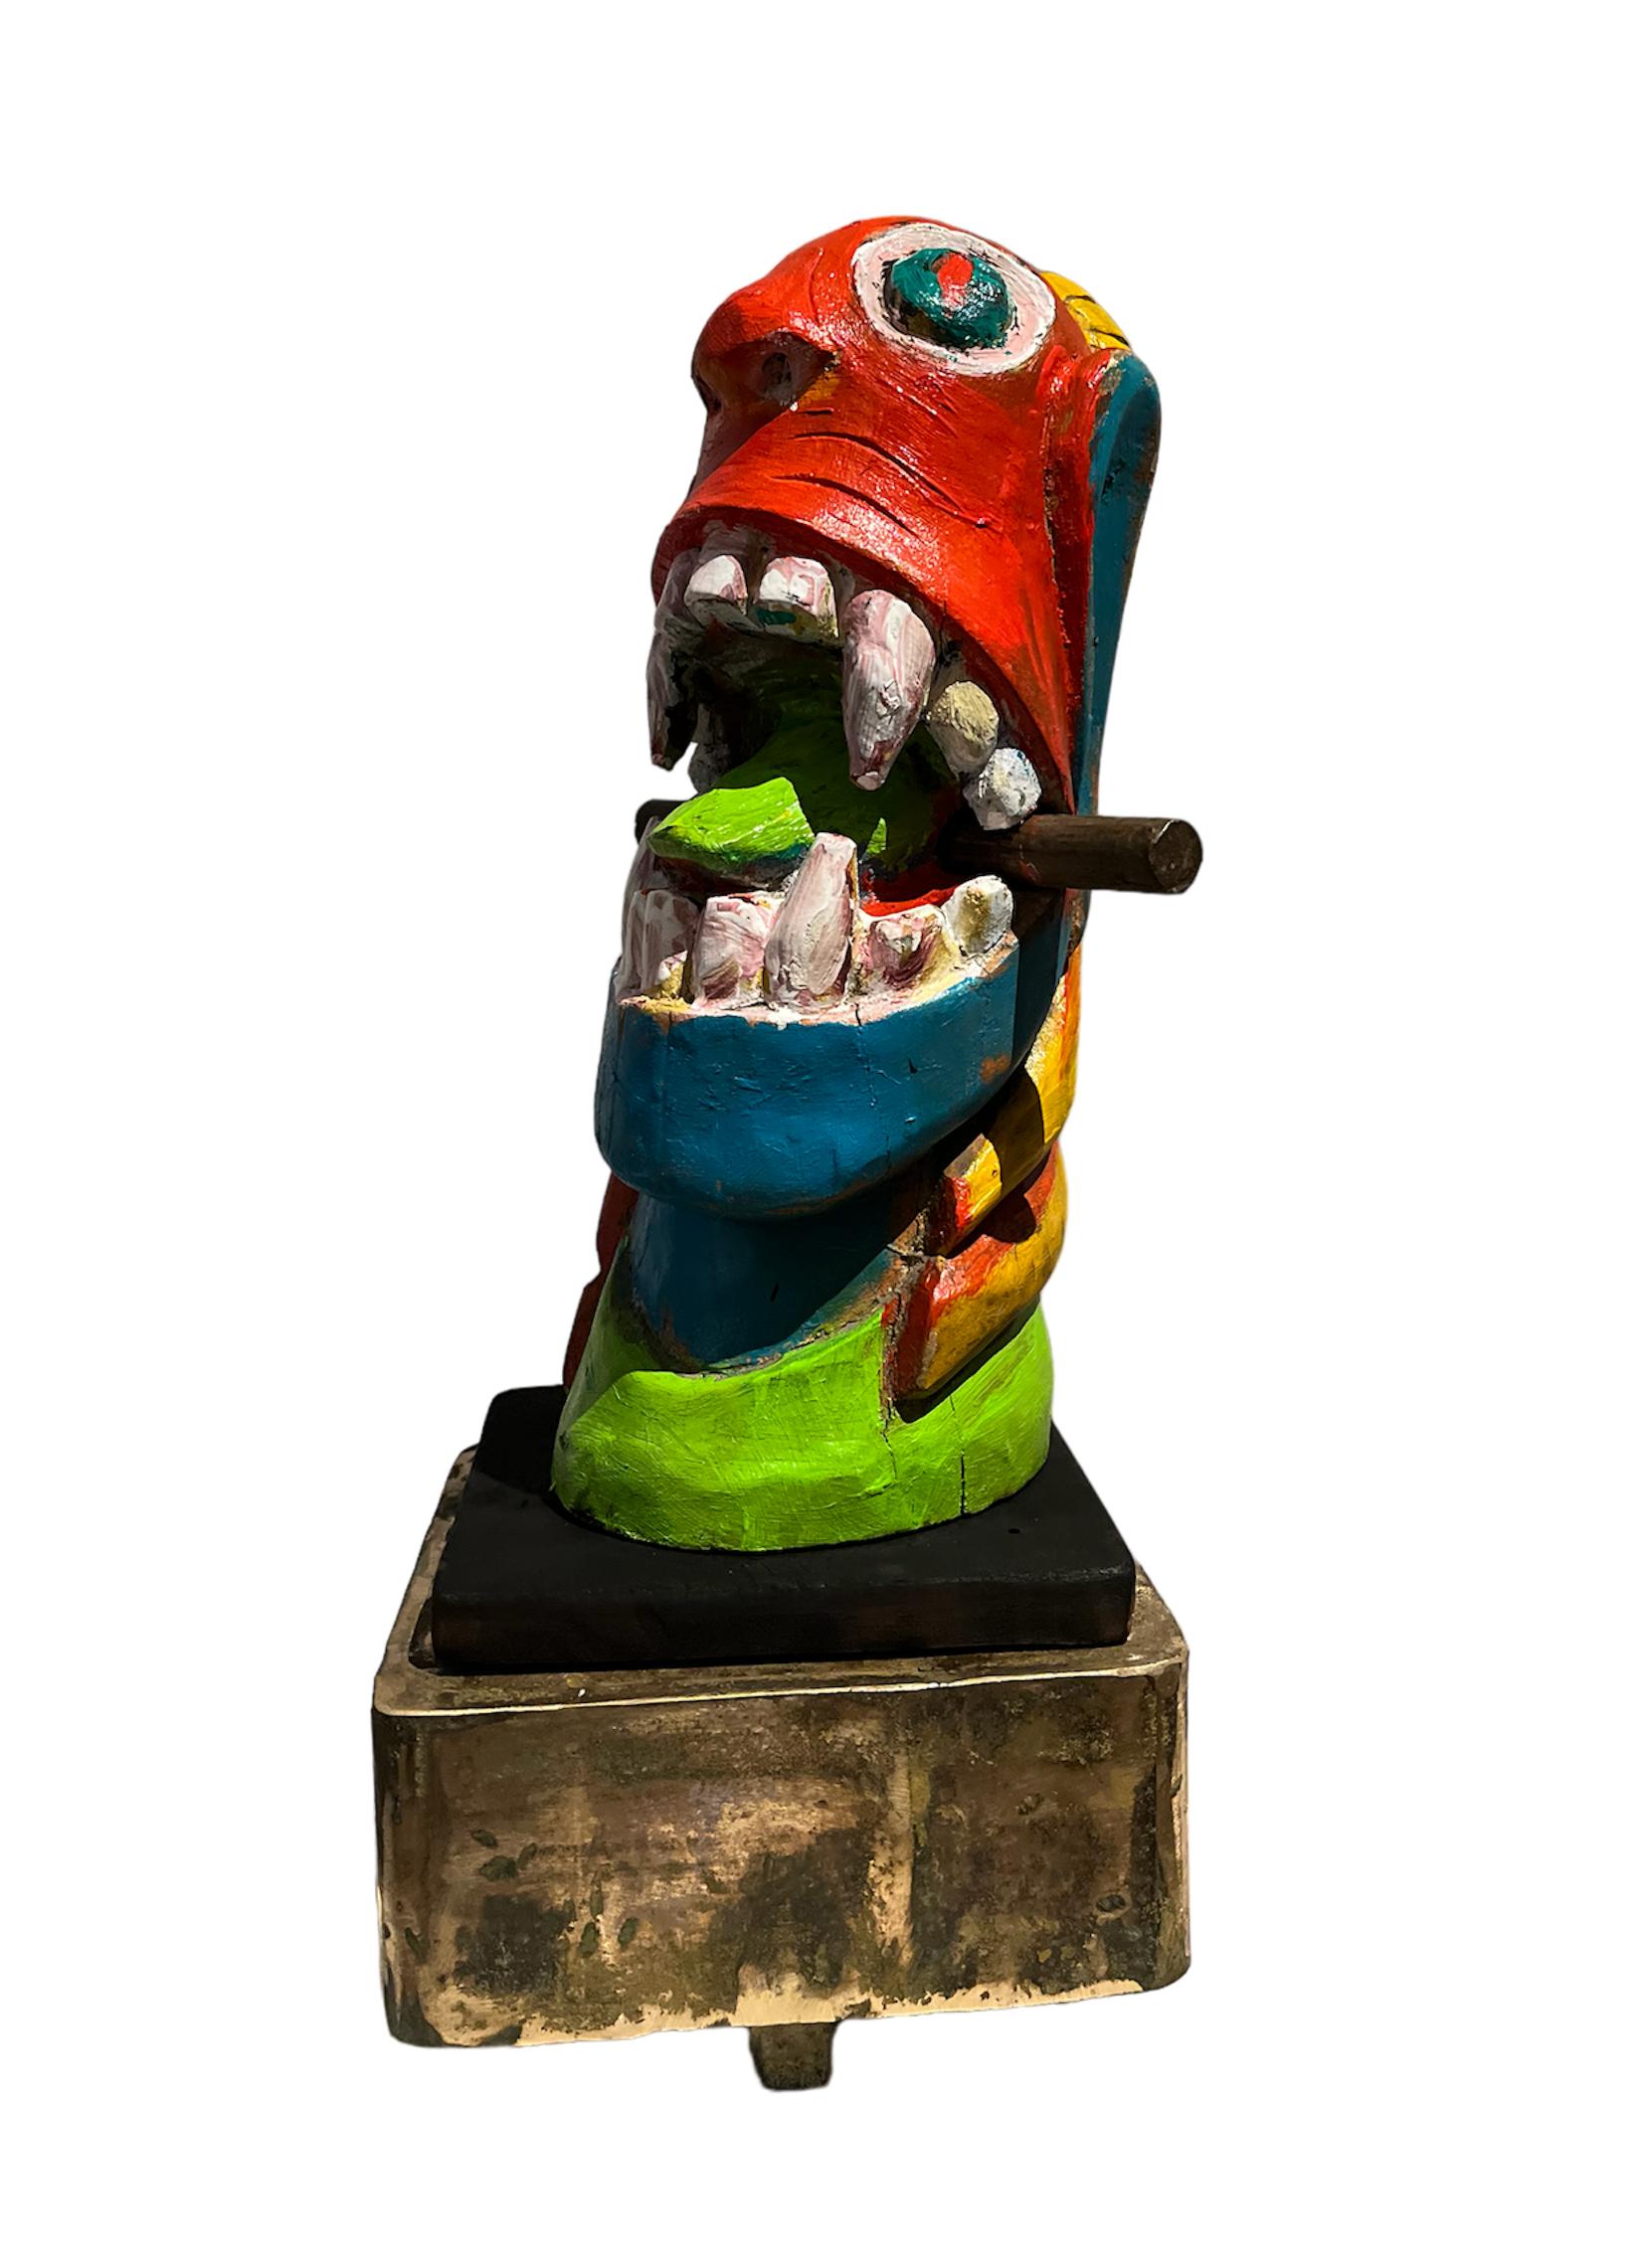 Figurative Sculpture José Ignacio Suarez Solis - Apropriaçao frei de carranca, Sculpture figurative. Sculptures de la série